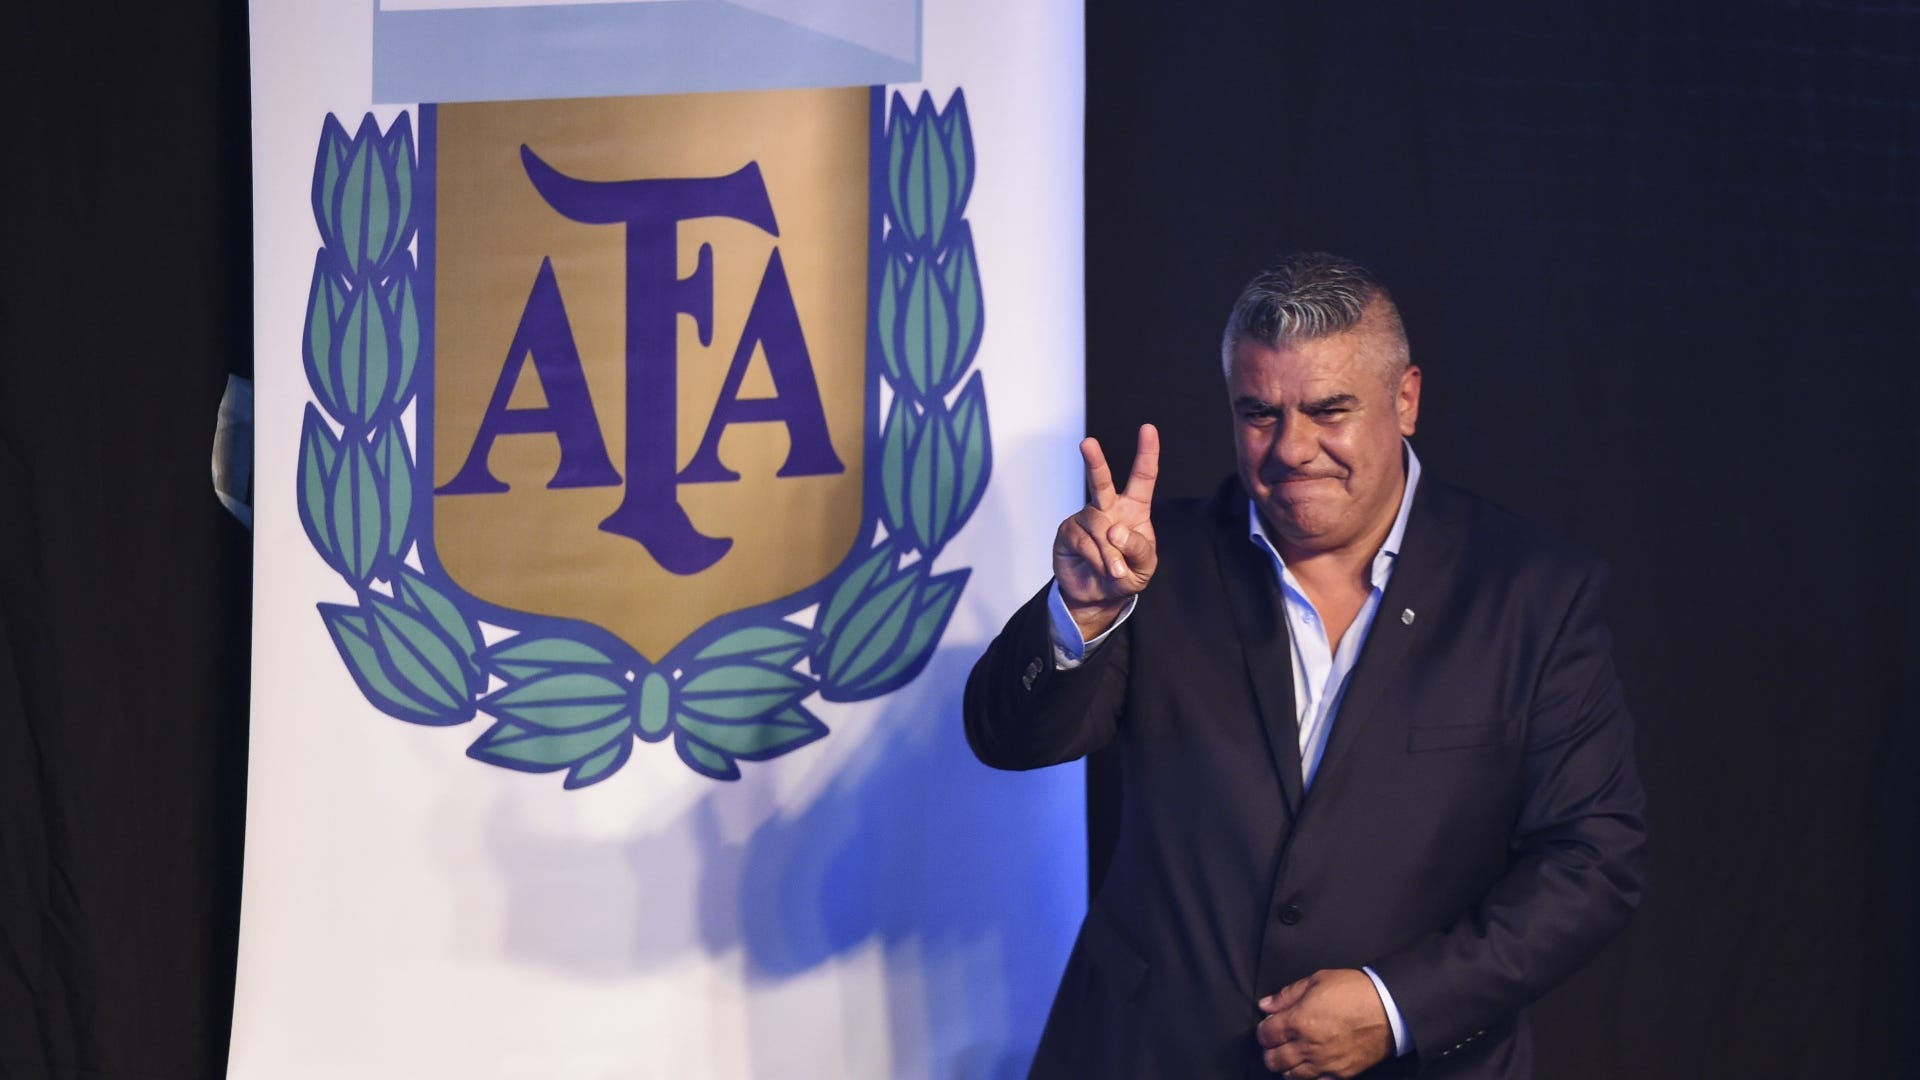 URGENTE: la AFA confirmó un nuevo ascenso en el fútbol argentino